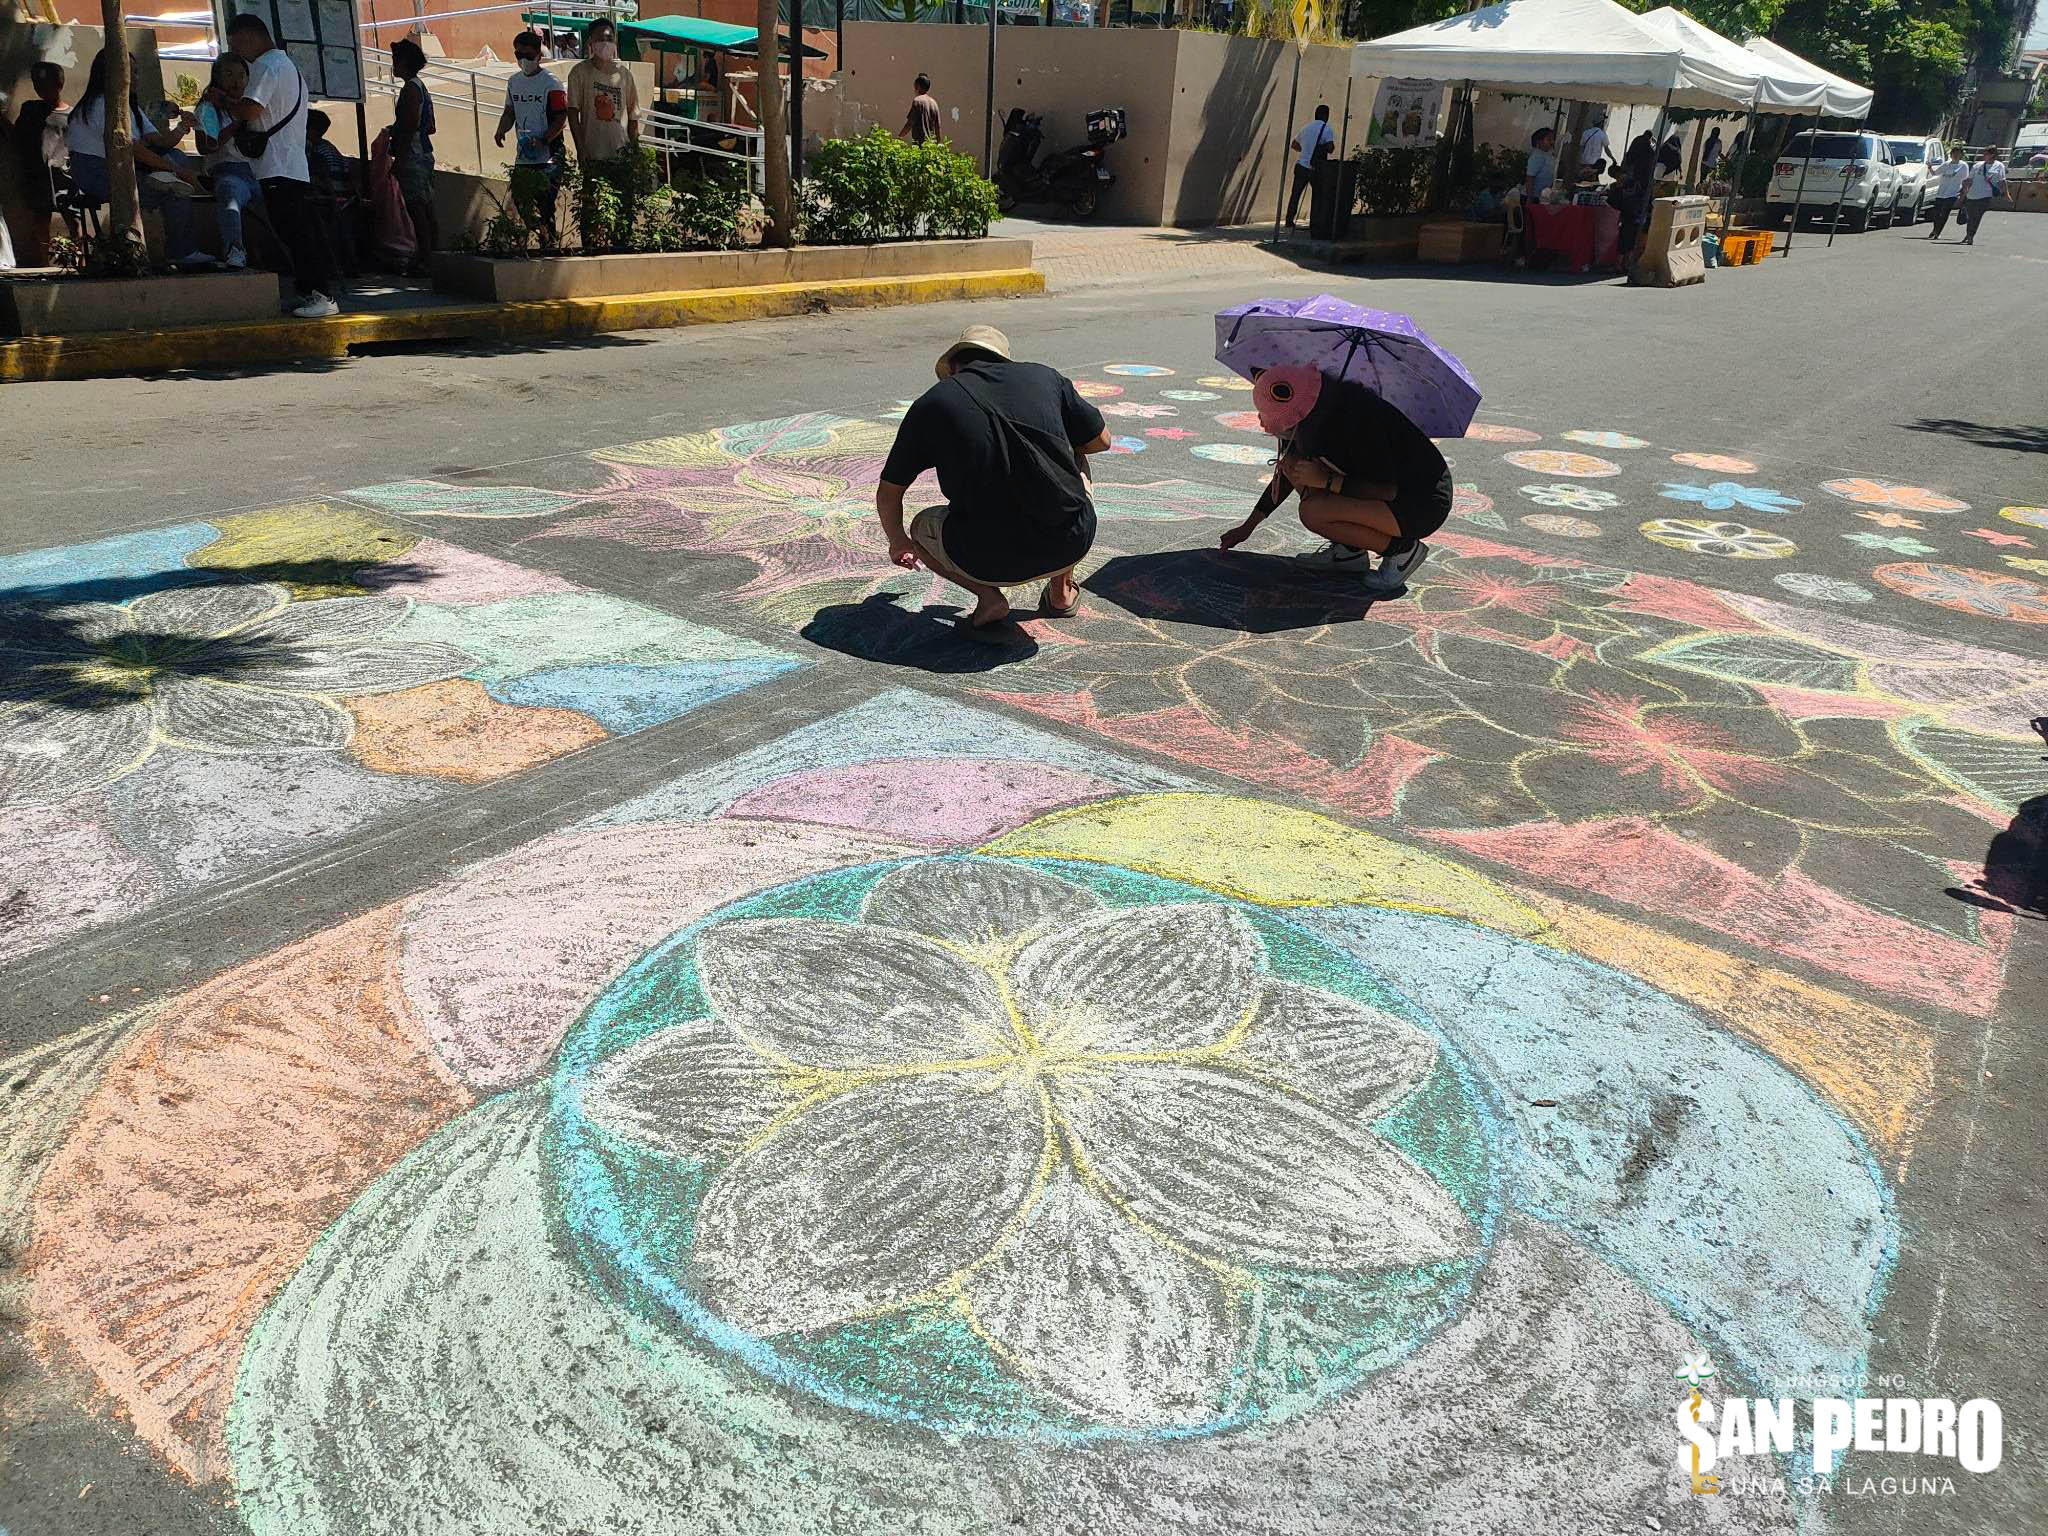 San Pedro, Laguna brings back Sampaguita flower festival